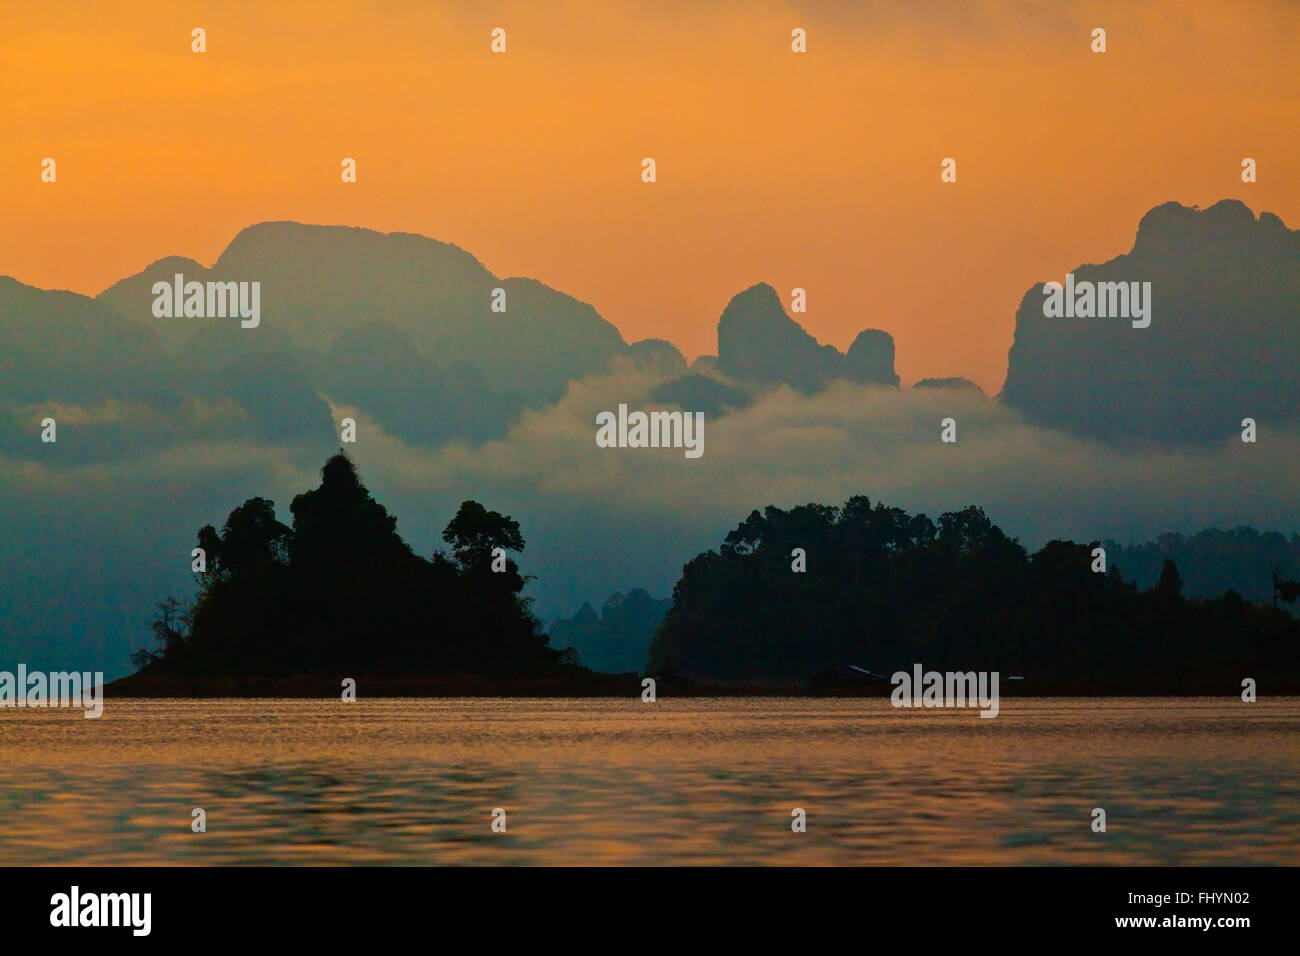 SUNSET on KLONG SAENG of CHEOW EN LAKE in KHAO SOK NATIONAL PARK - THAILAND Stock Photo